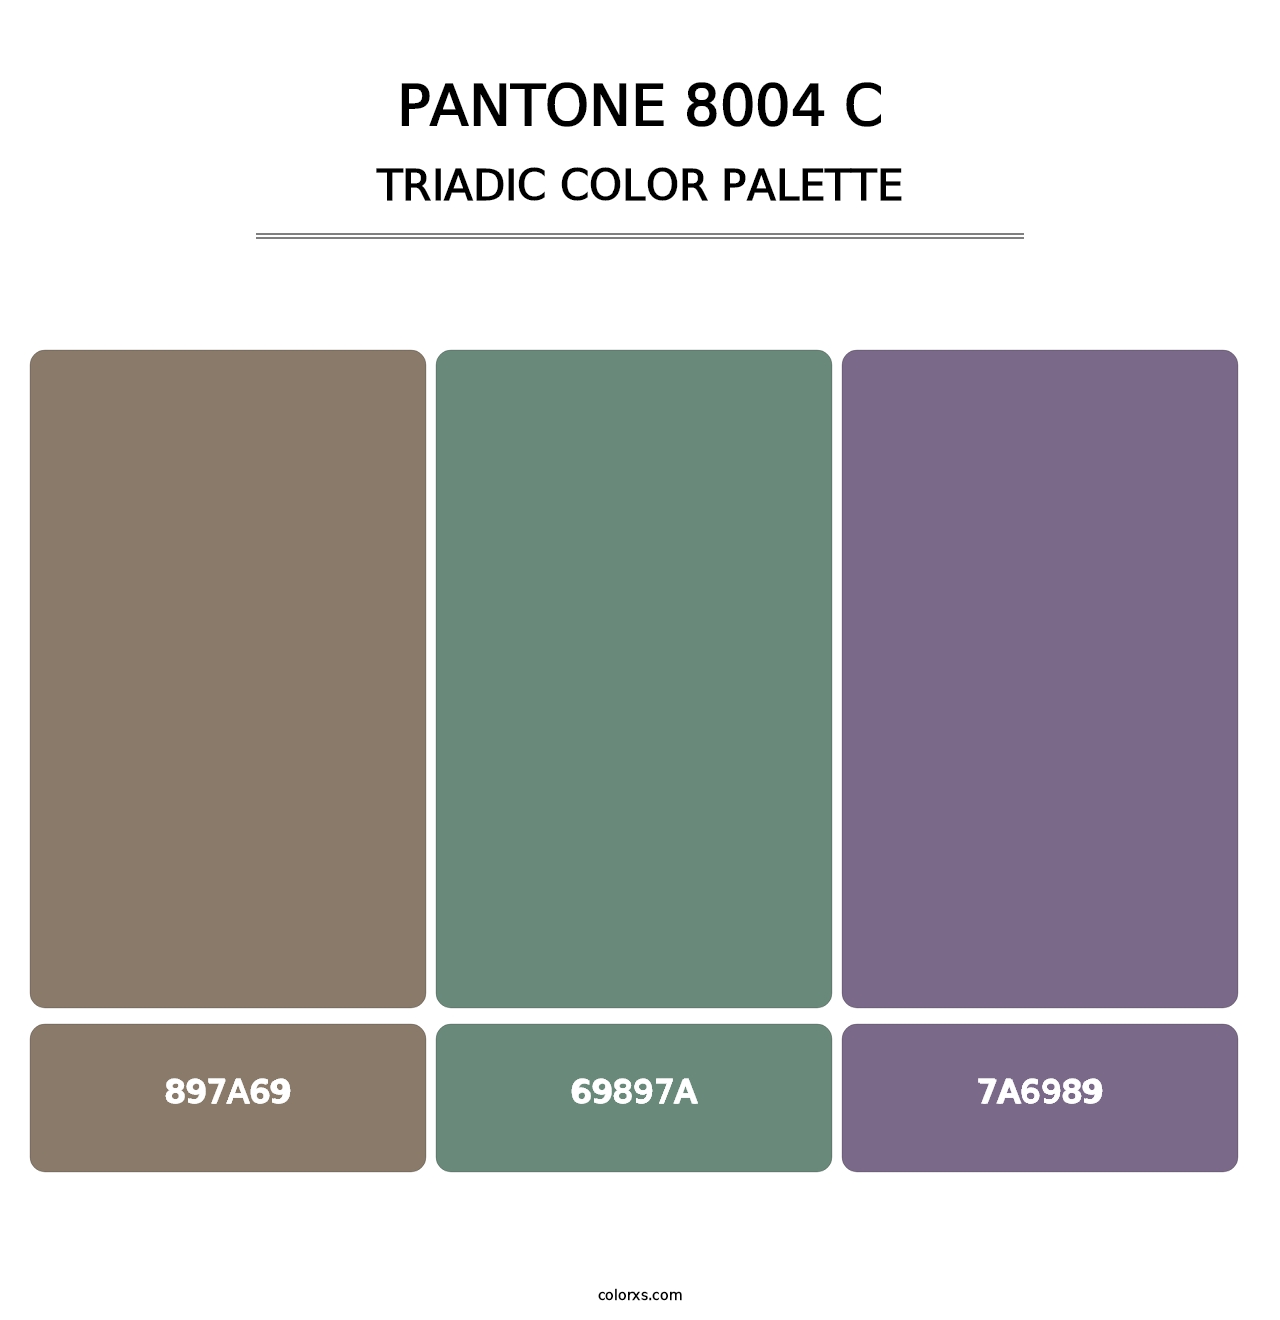 PANTONE 8004 C - Triadic Color Palette